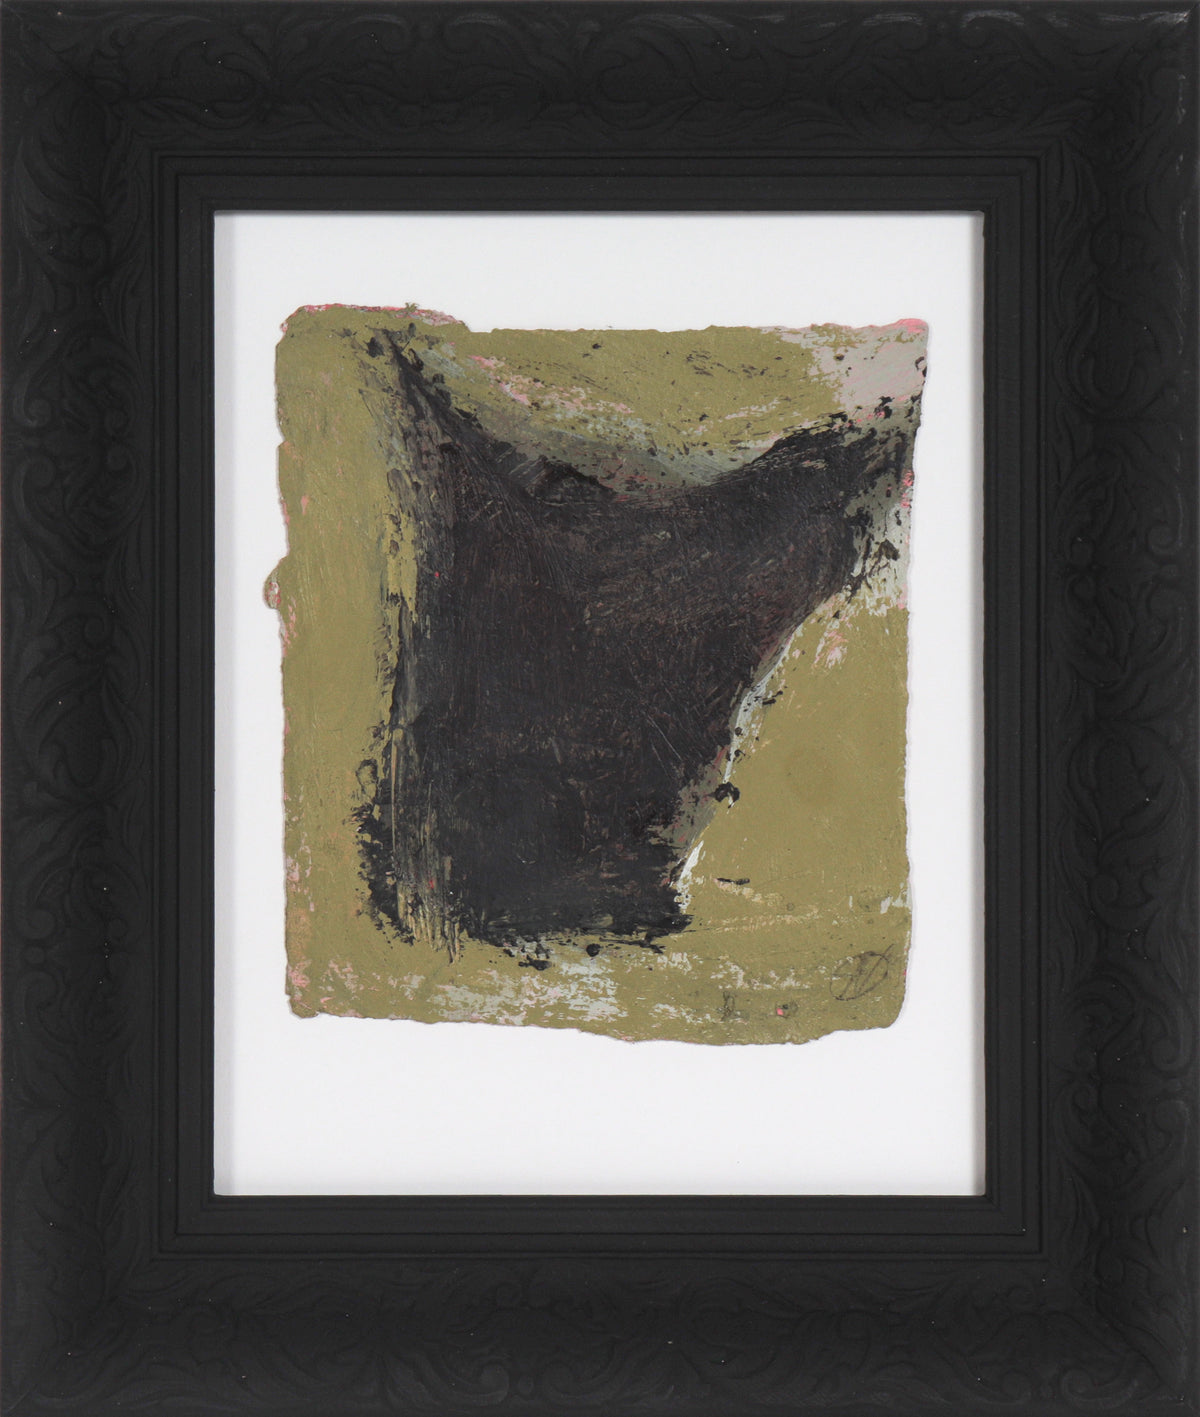 Green &amp; Black Gestural Abstract I&lt;br&gt;20th century Oil on Paper&lt;br&gt;&lt;br&gt;#C5368